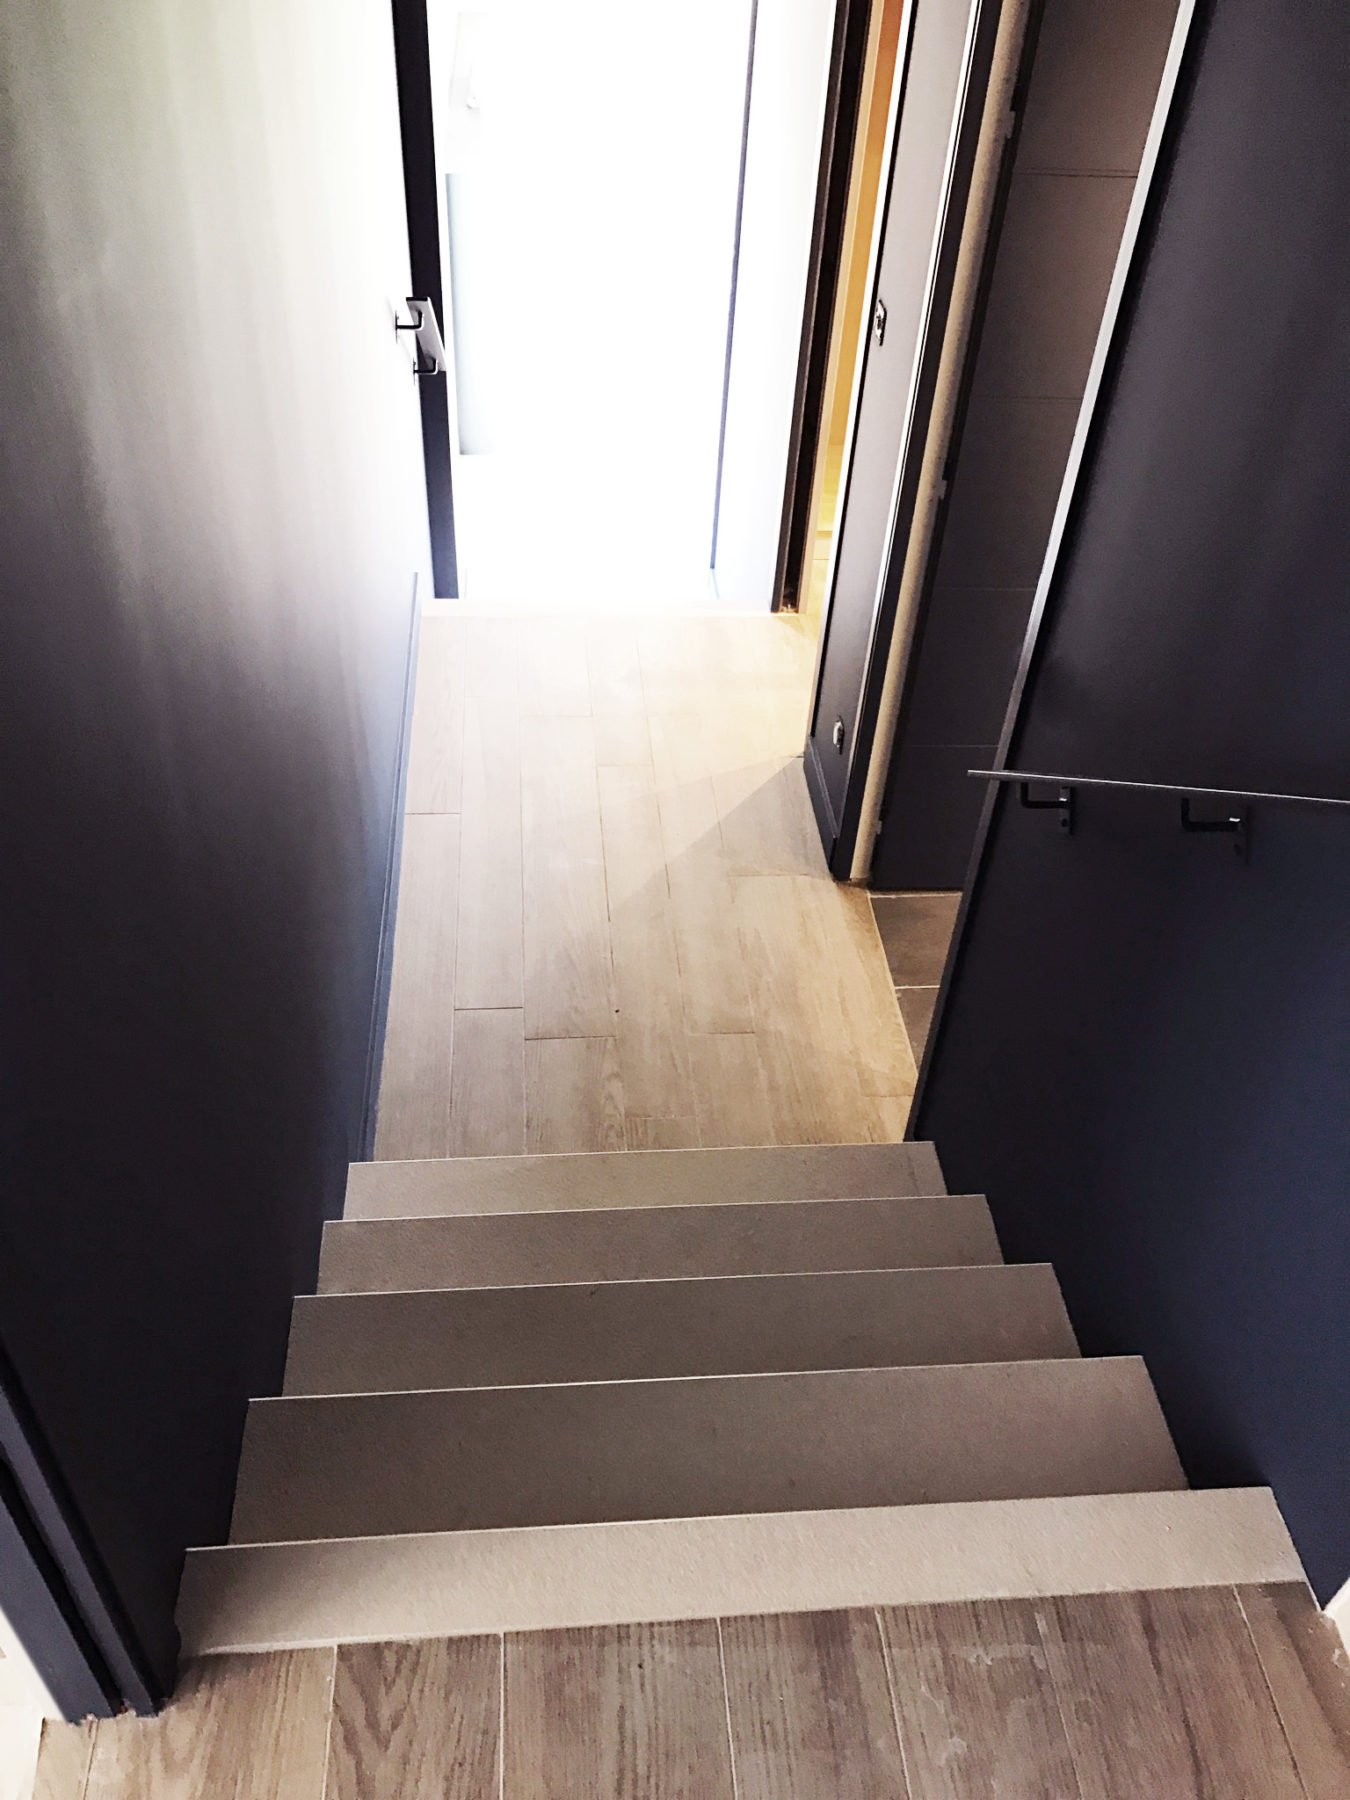 Anouck Charbonnier - Vue 3D - réalisation maison complète - escaliers aménagés - Salvagny